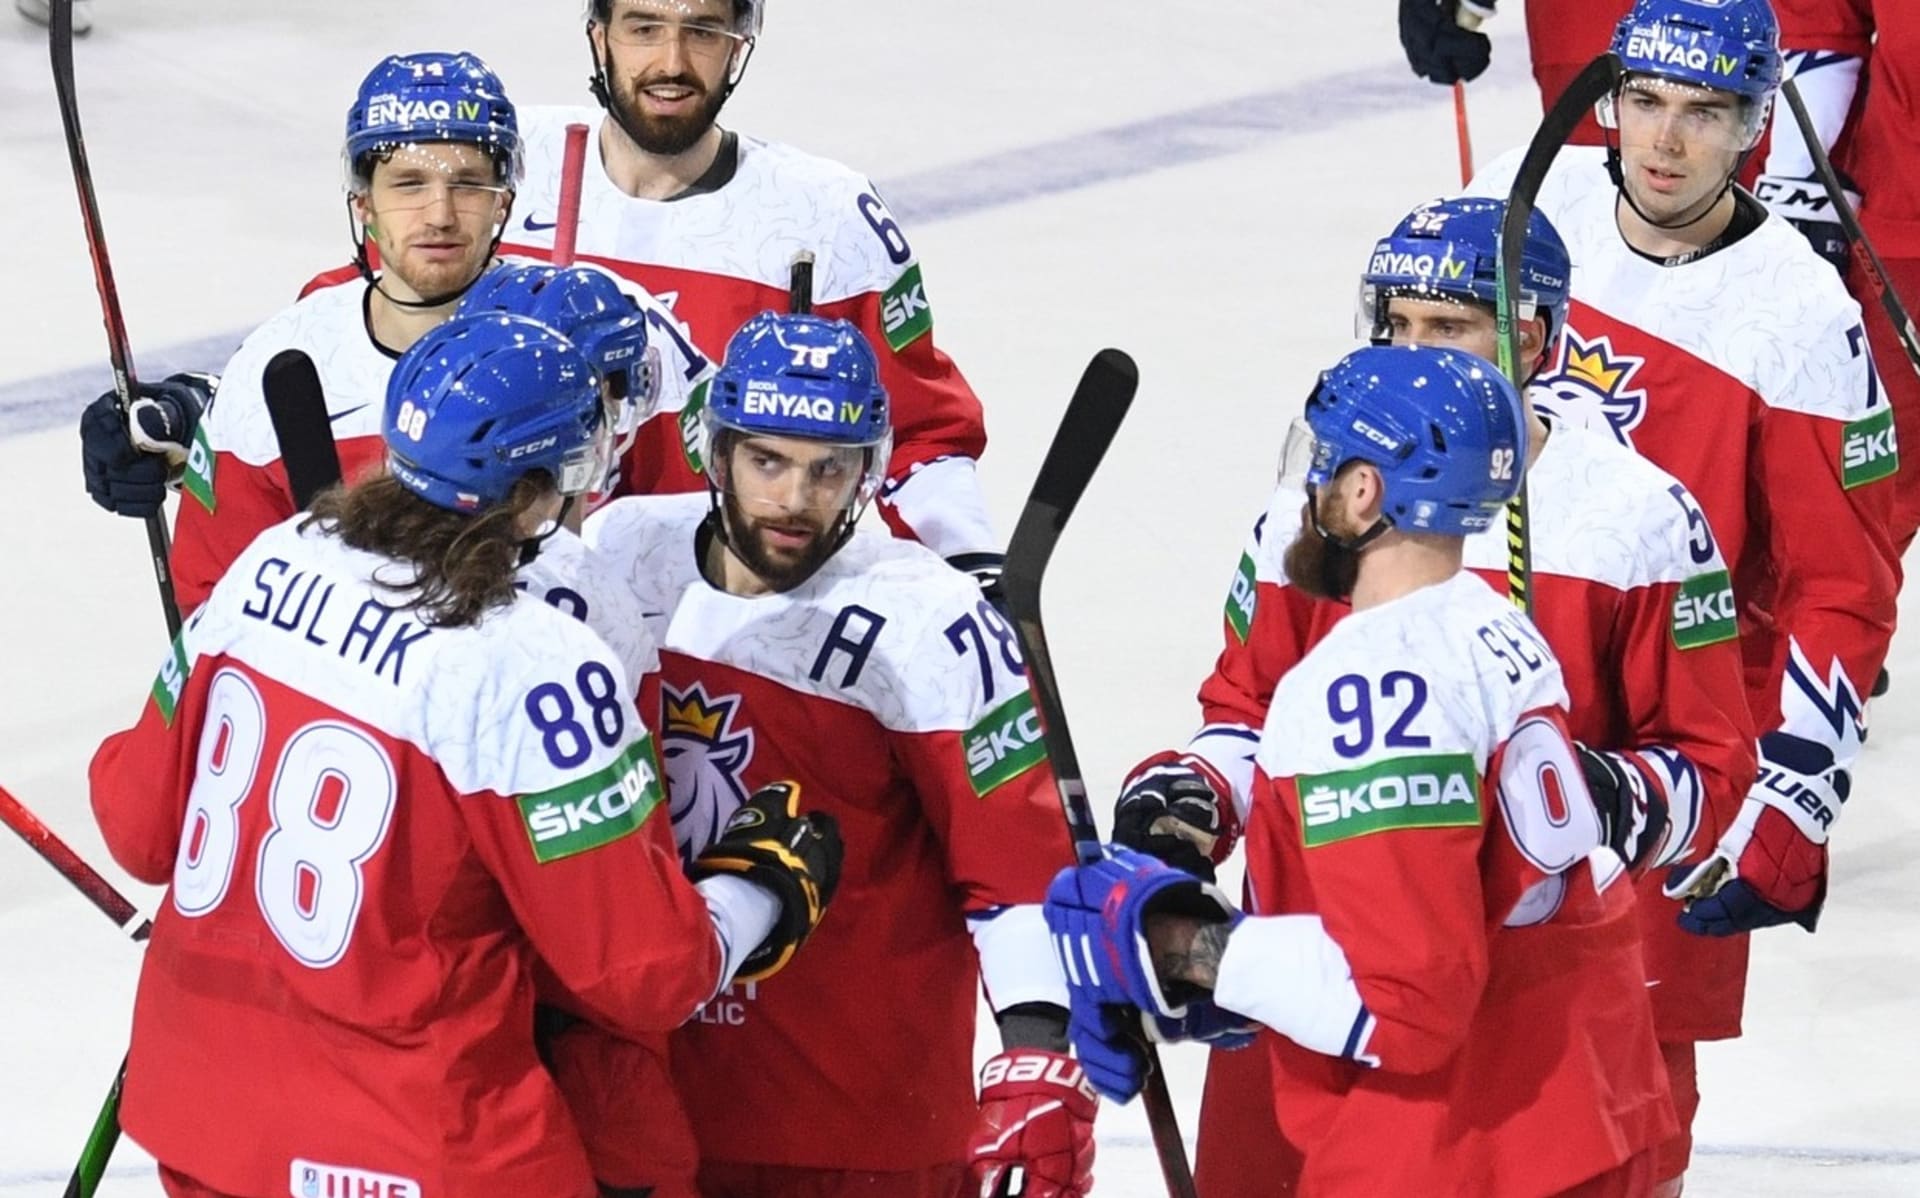 Konečně se česká reprezentace dočkala na hokejovém mistrovství světa výhry. Zdolání Bělorusů však mělo řadu nedokonalostí, už jen tu, že k vítězství došlo až v prodloužení.